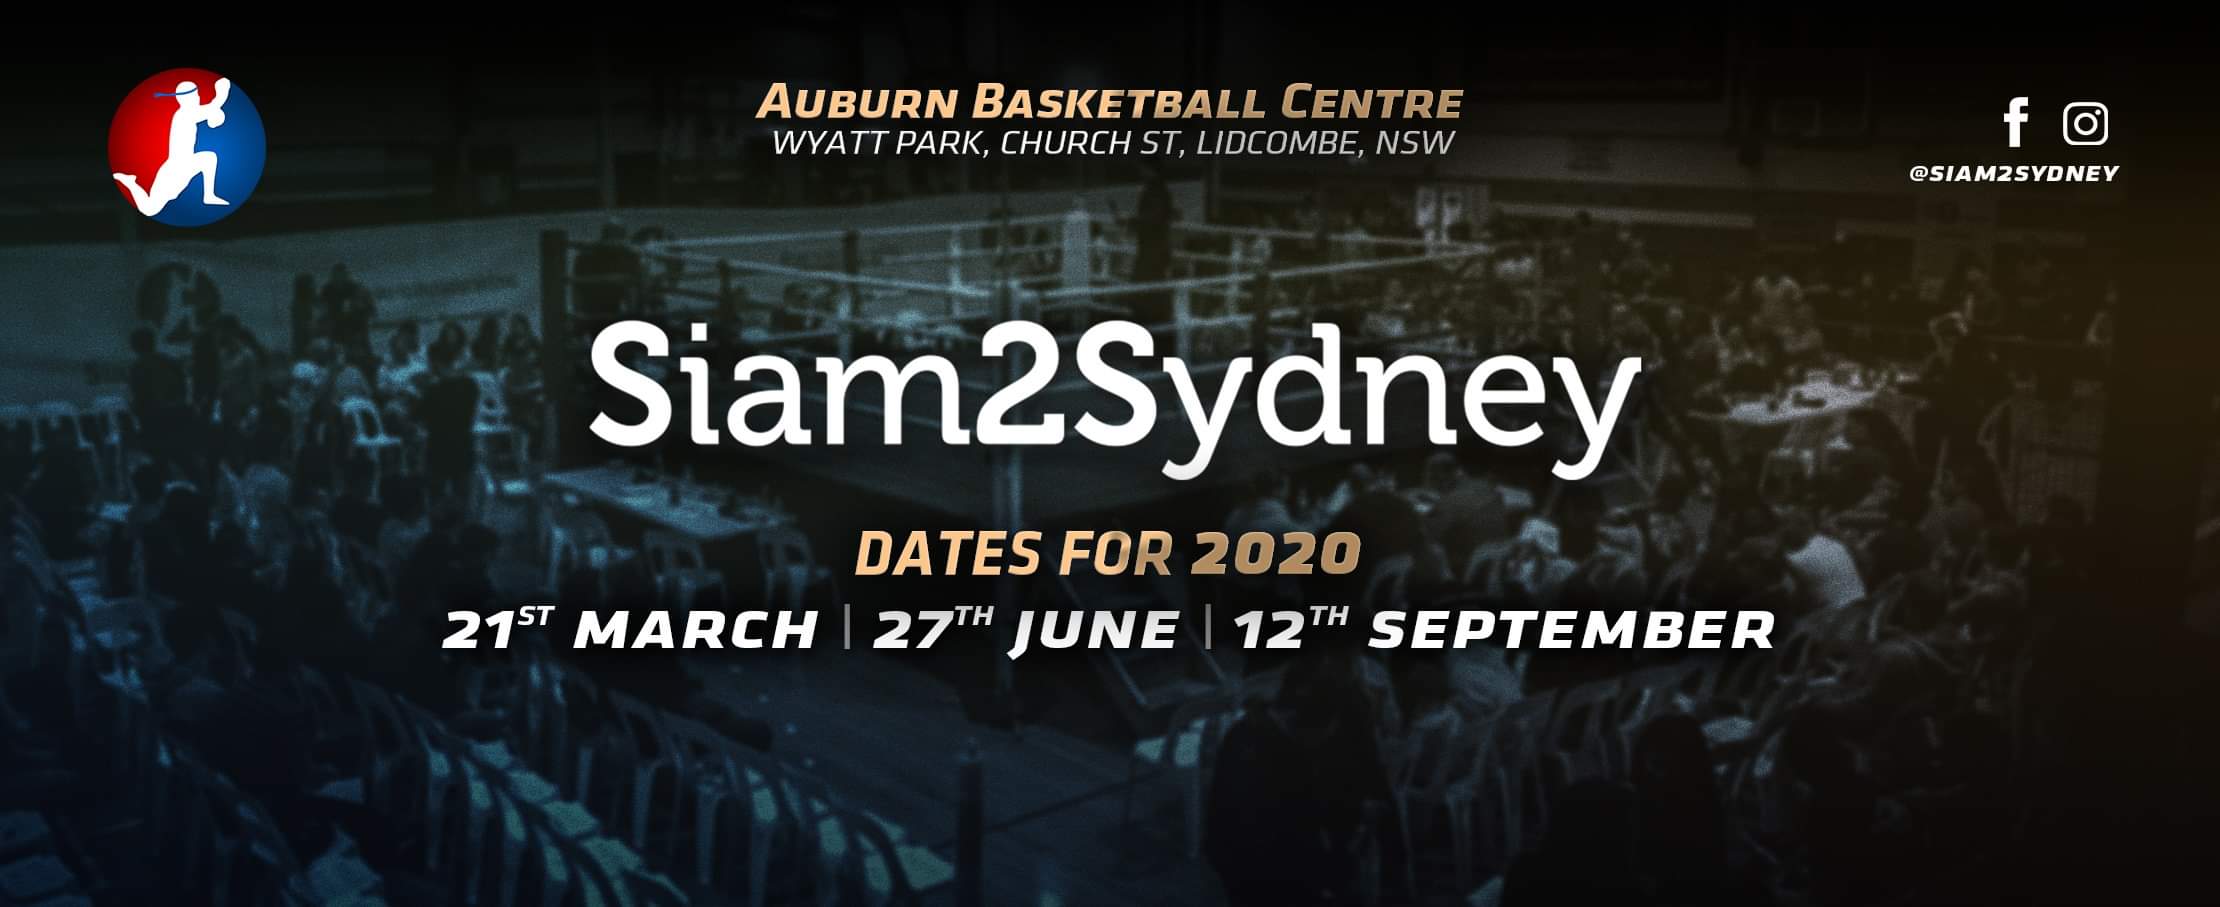 Siam 2 Sydney 2020 dates